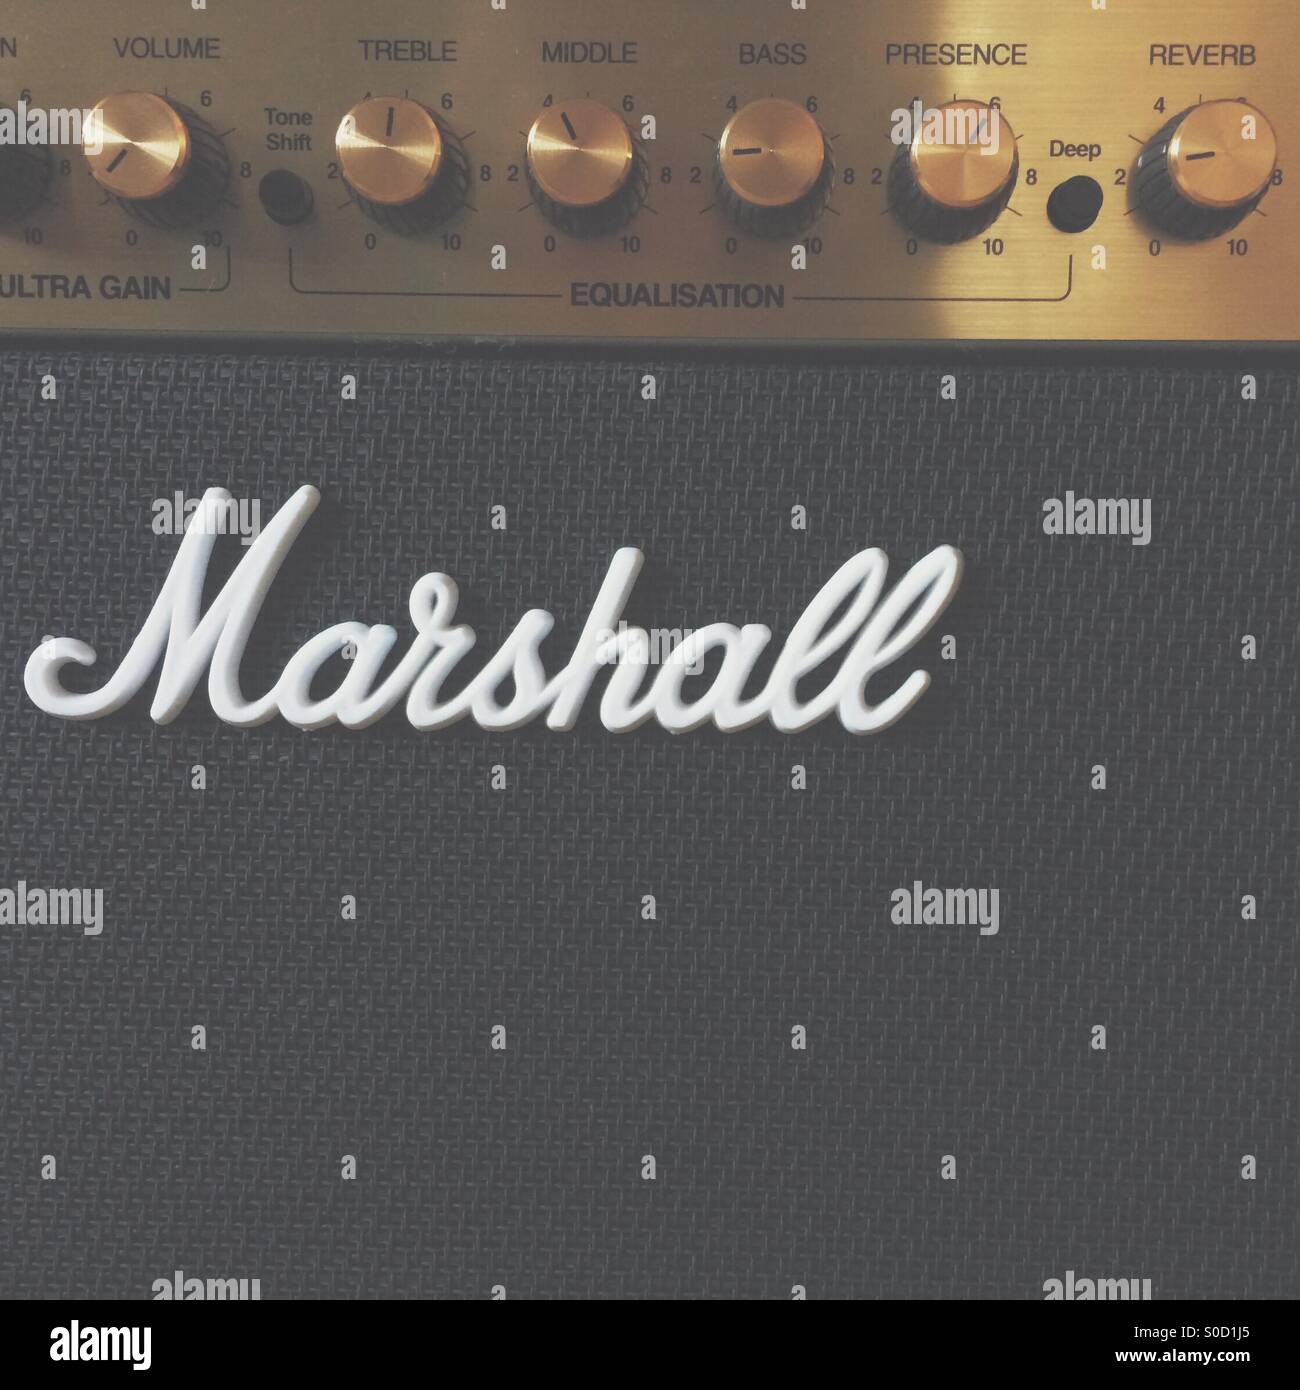 Marshall guitar amp Stock Photo